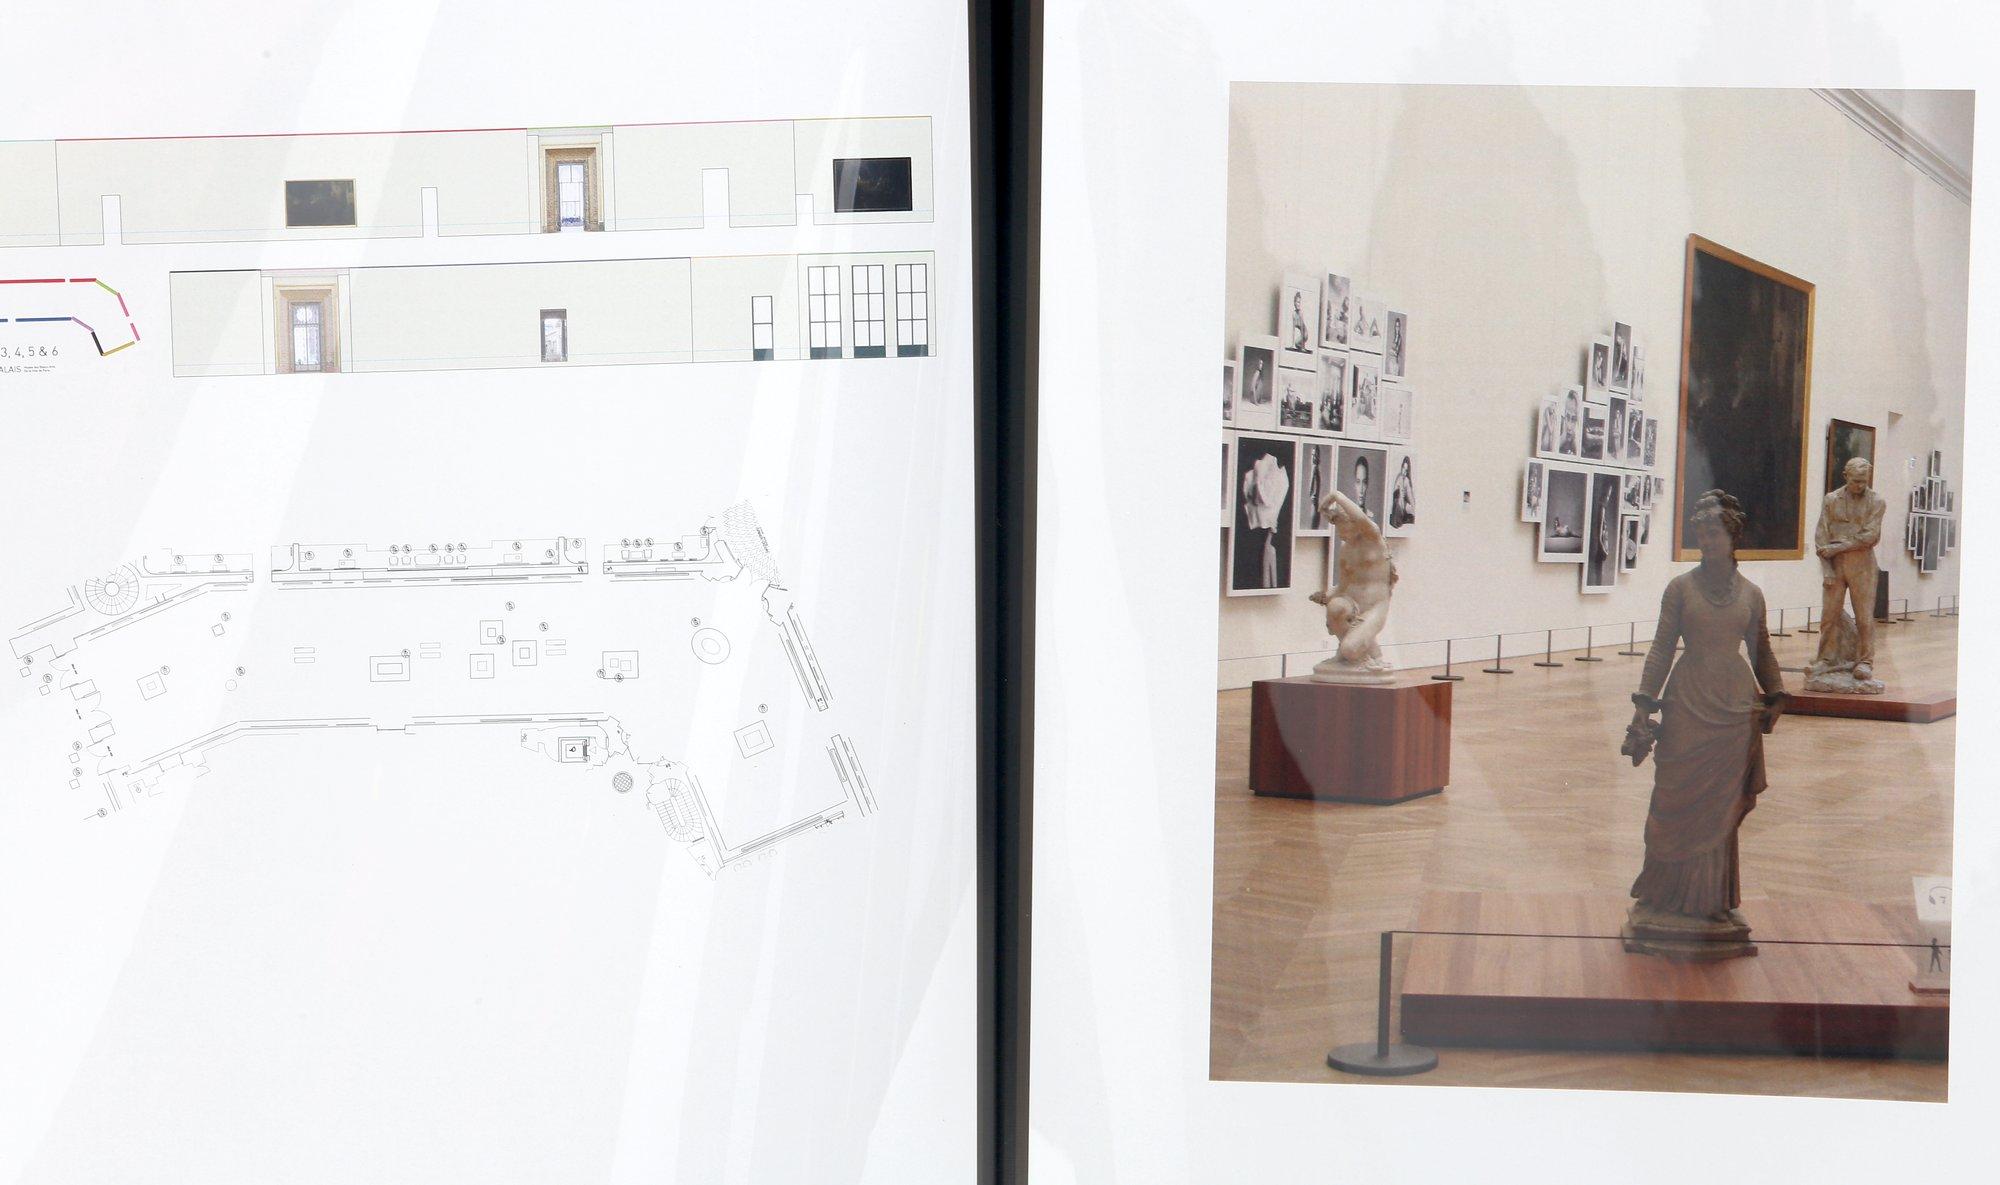 Patrick Demarchelier Exhibit Documentation Book Of Le Petit Palais Muse Des Beaux-Arts In Paris